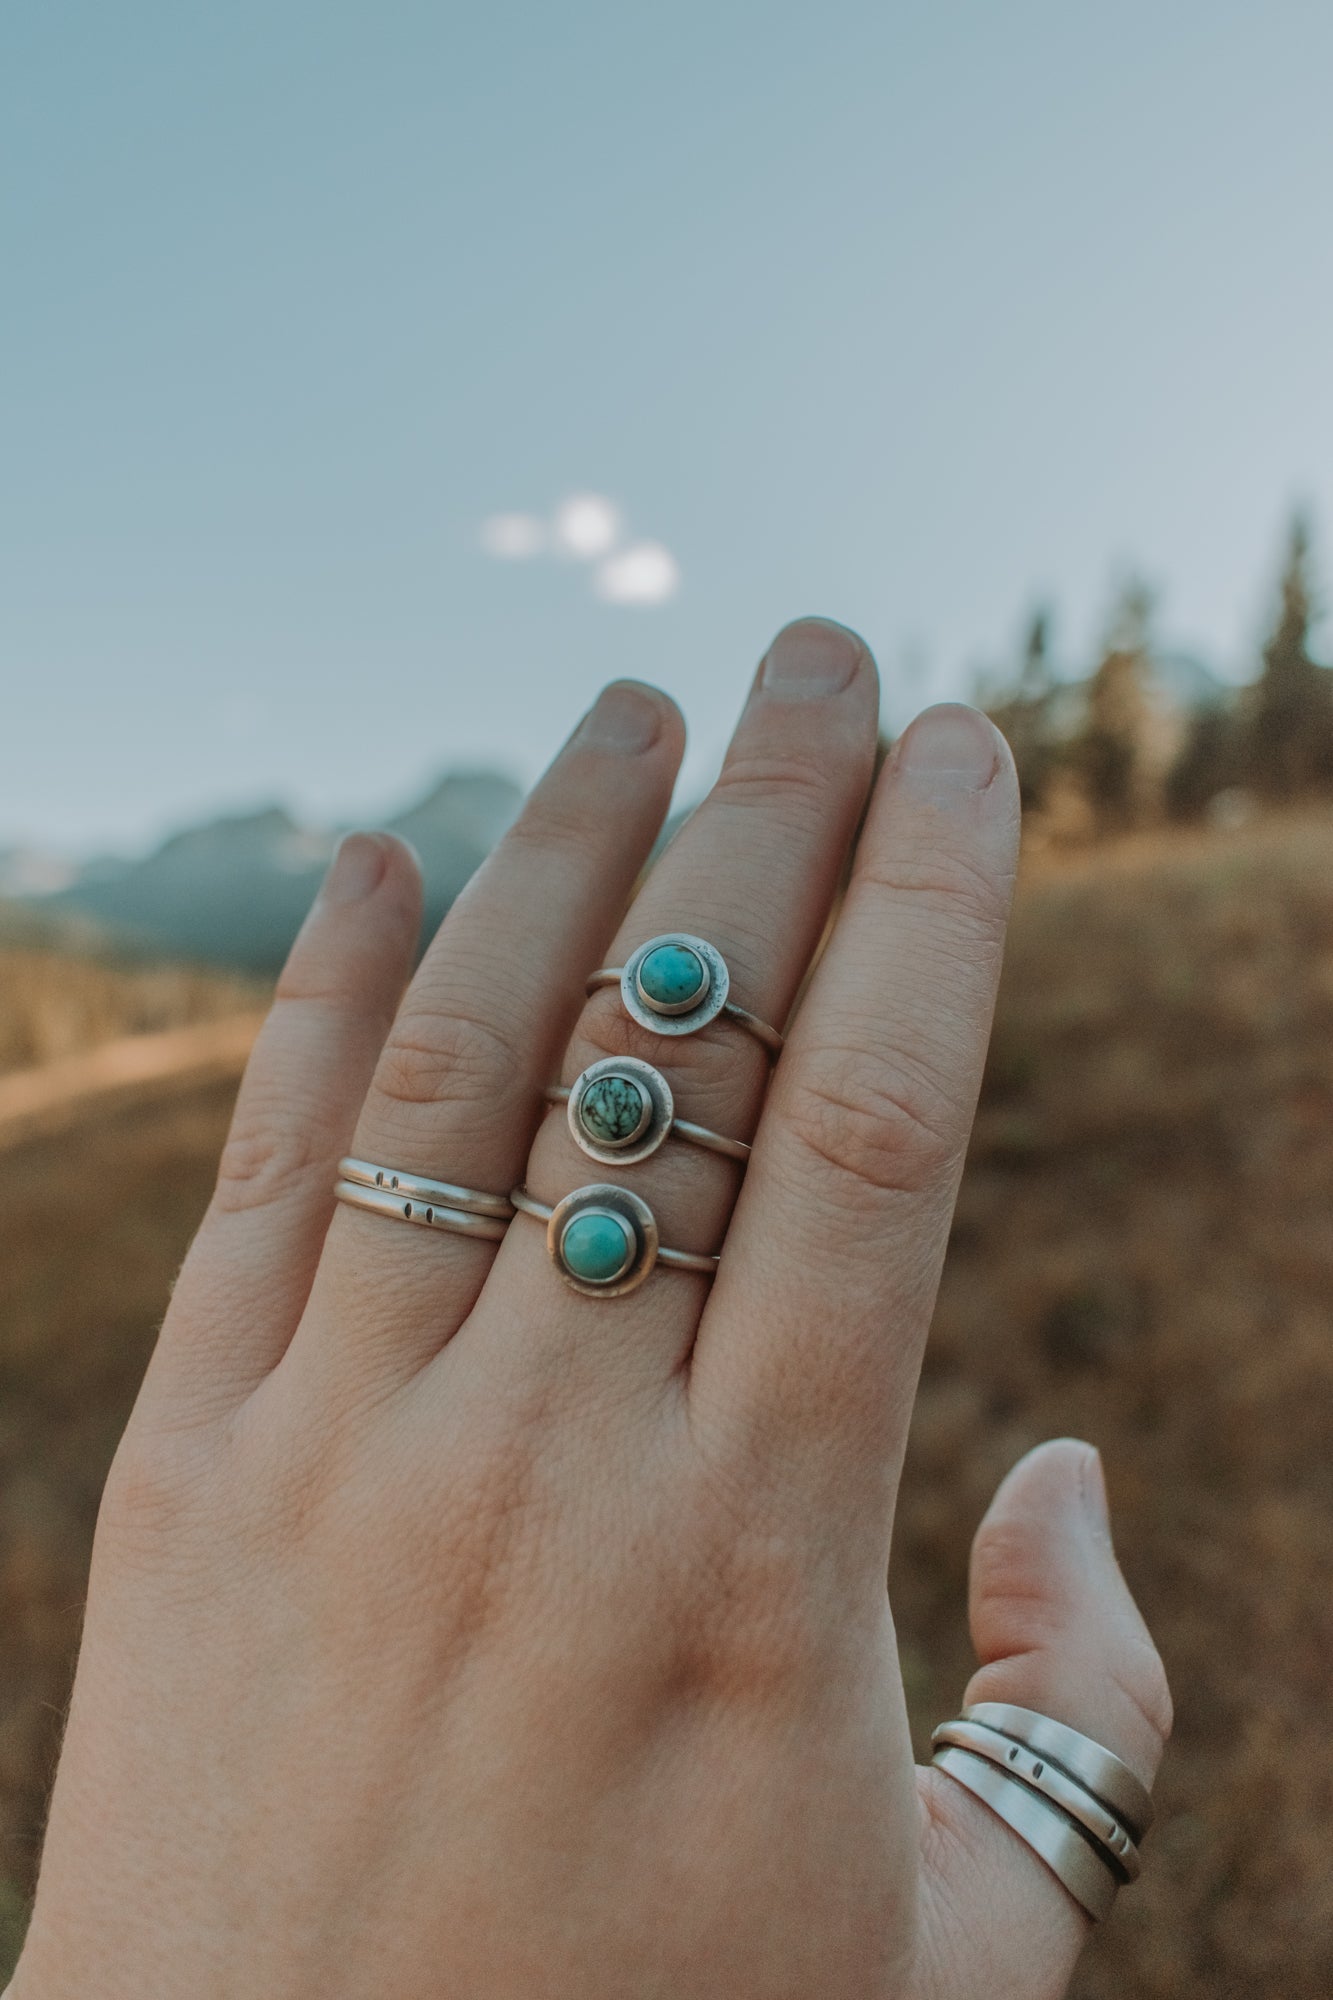 Stone Stacking Ring - Third Hand Silversmith LLC handmade jewelry, Bozeman, Montana